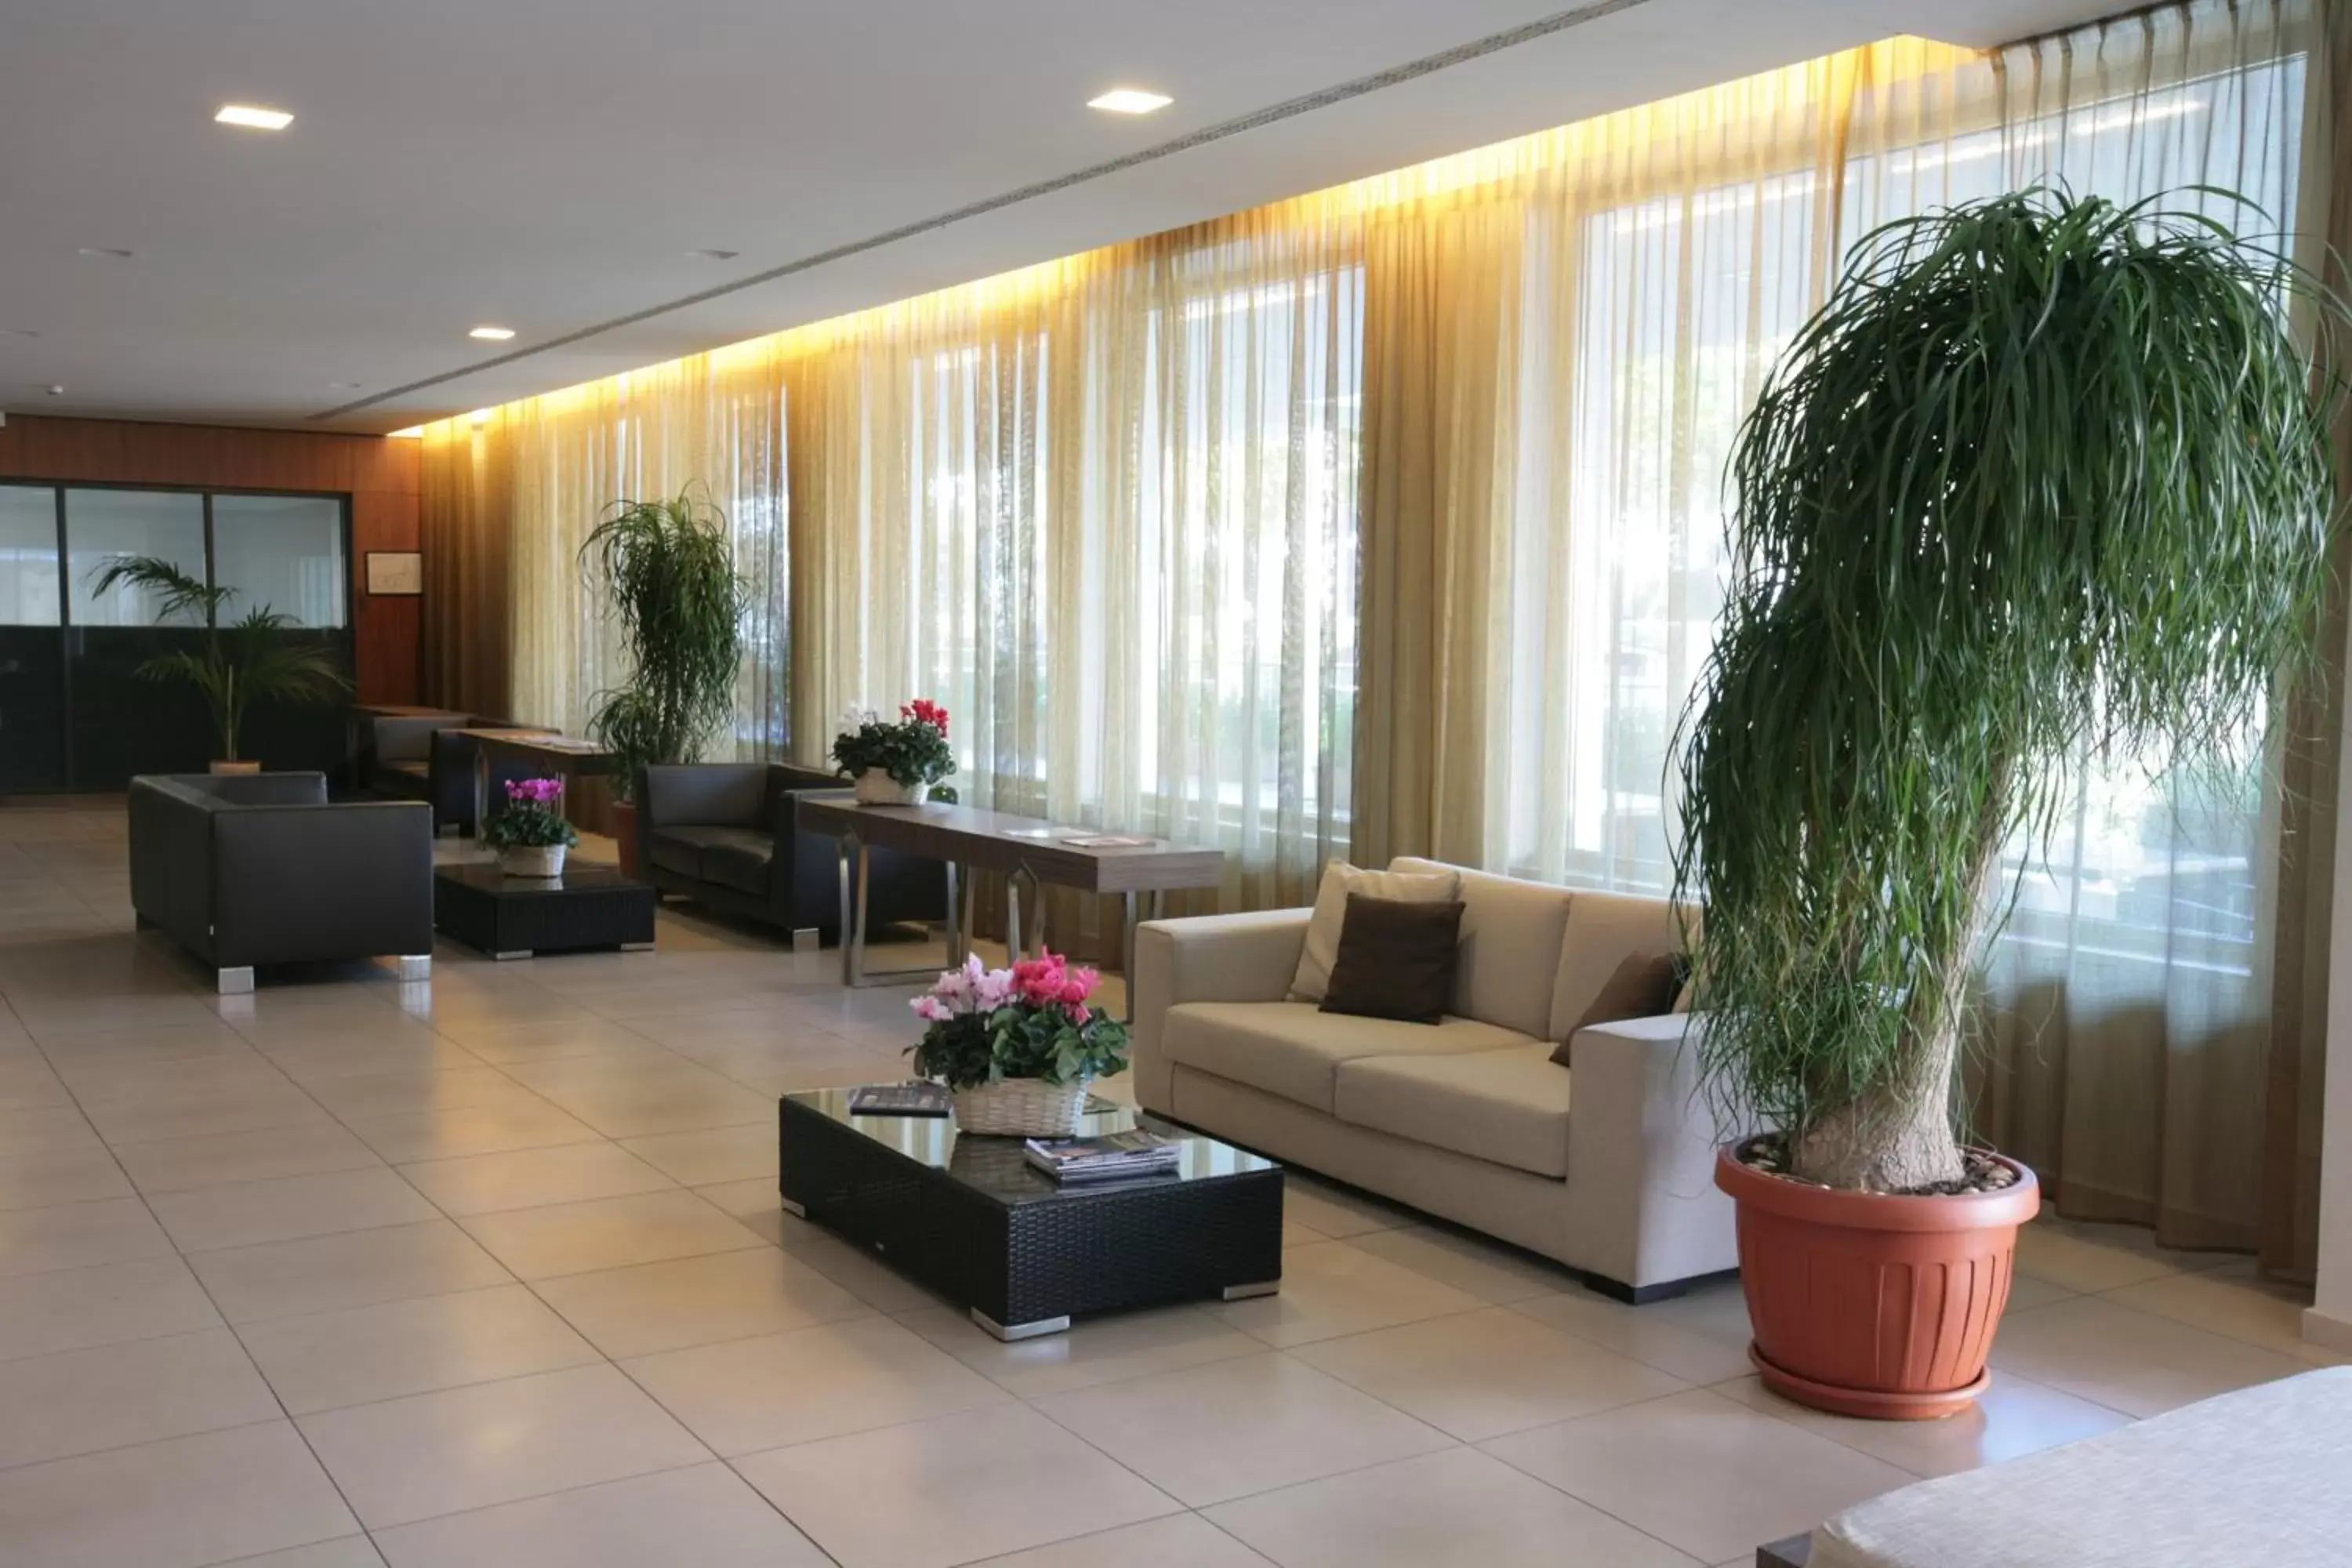 Lobby or reception, Lobby/Reception in Hotel Mirasole International